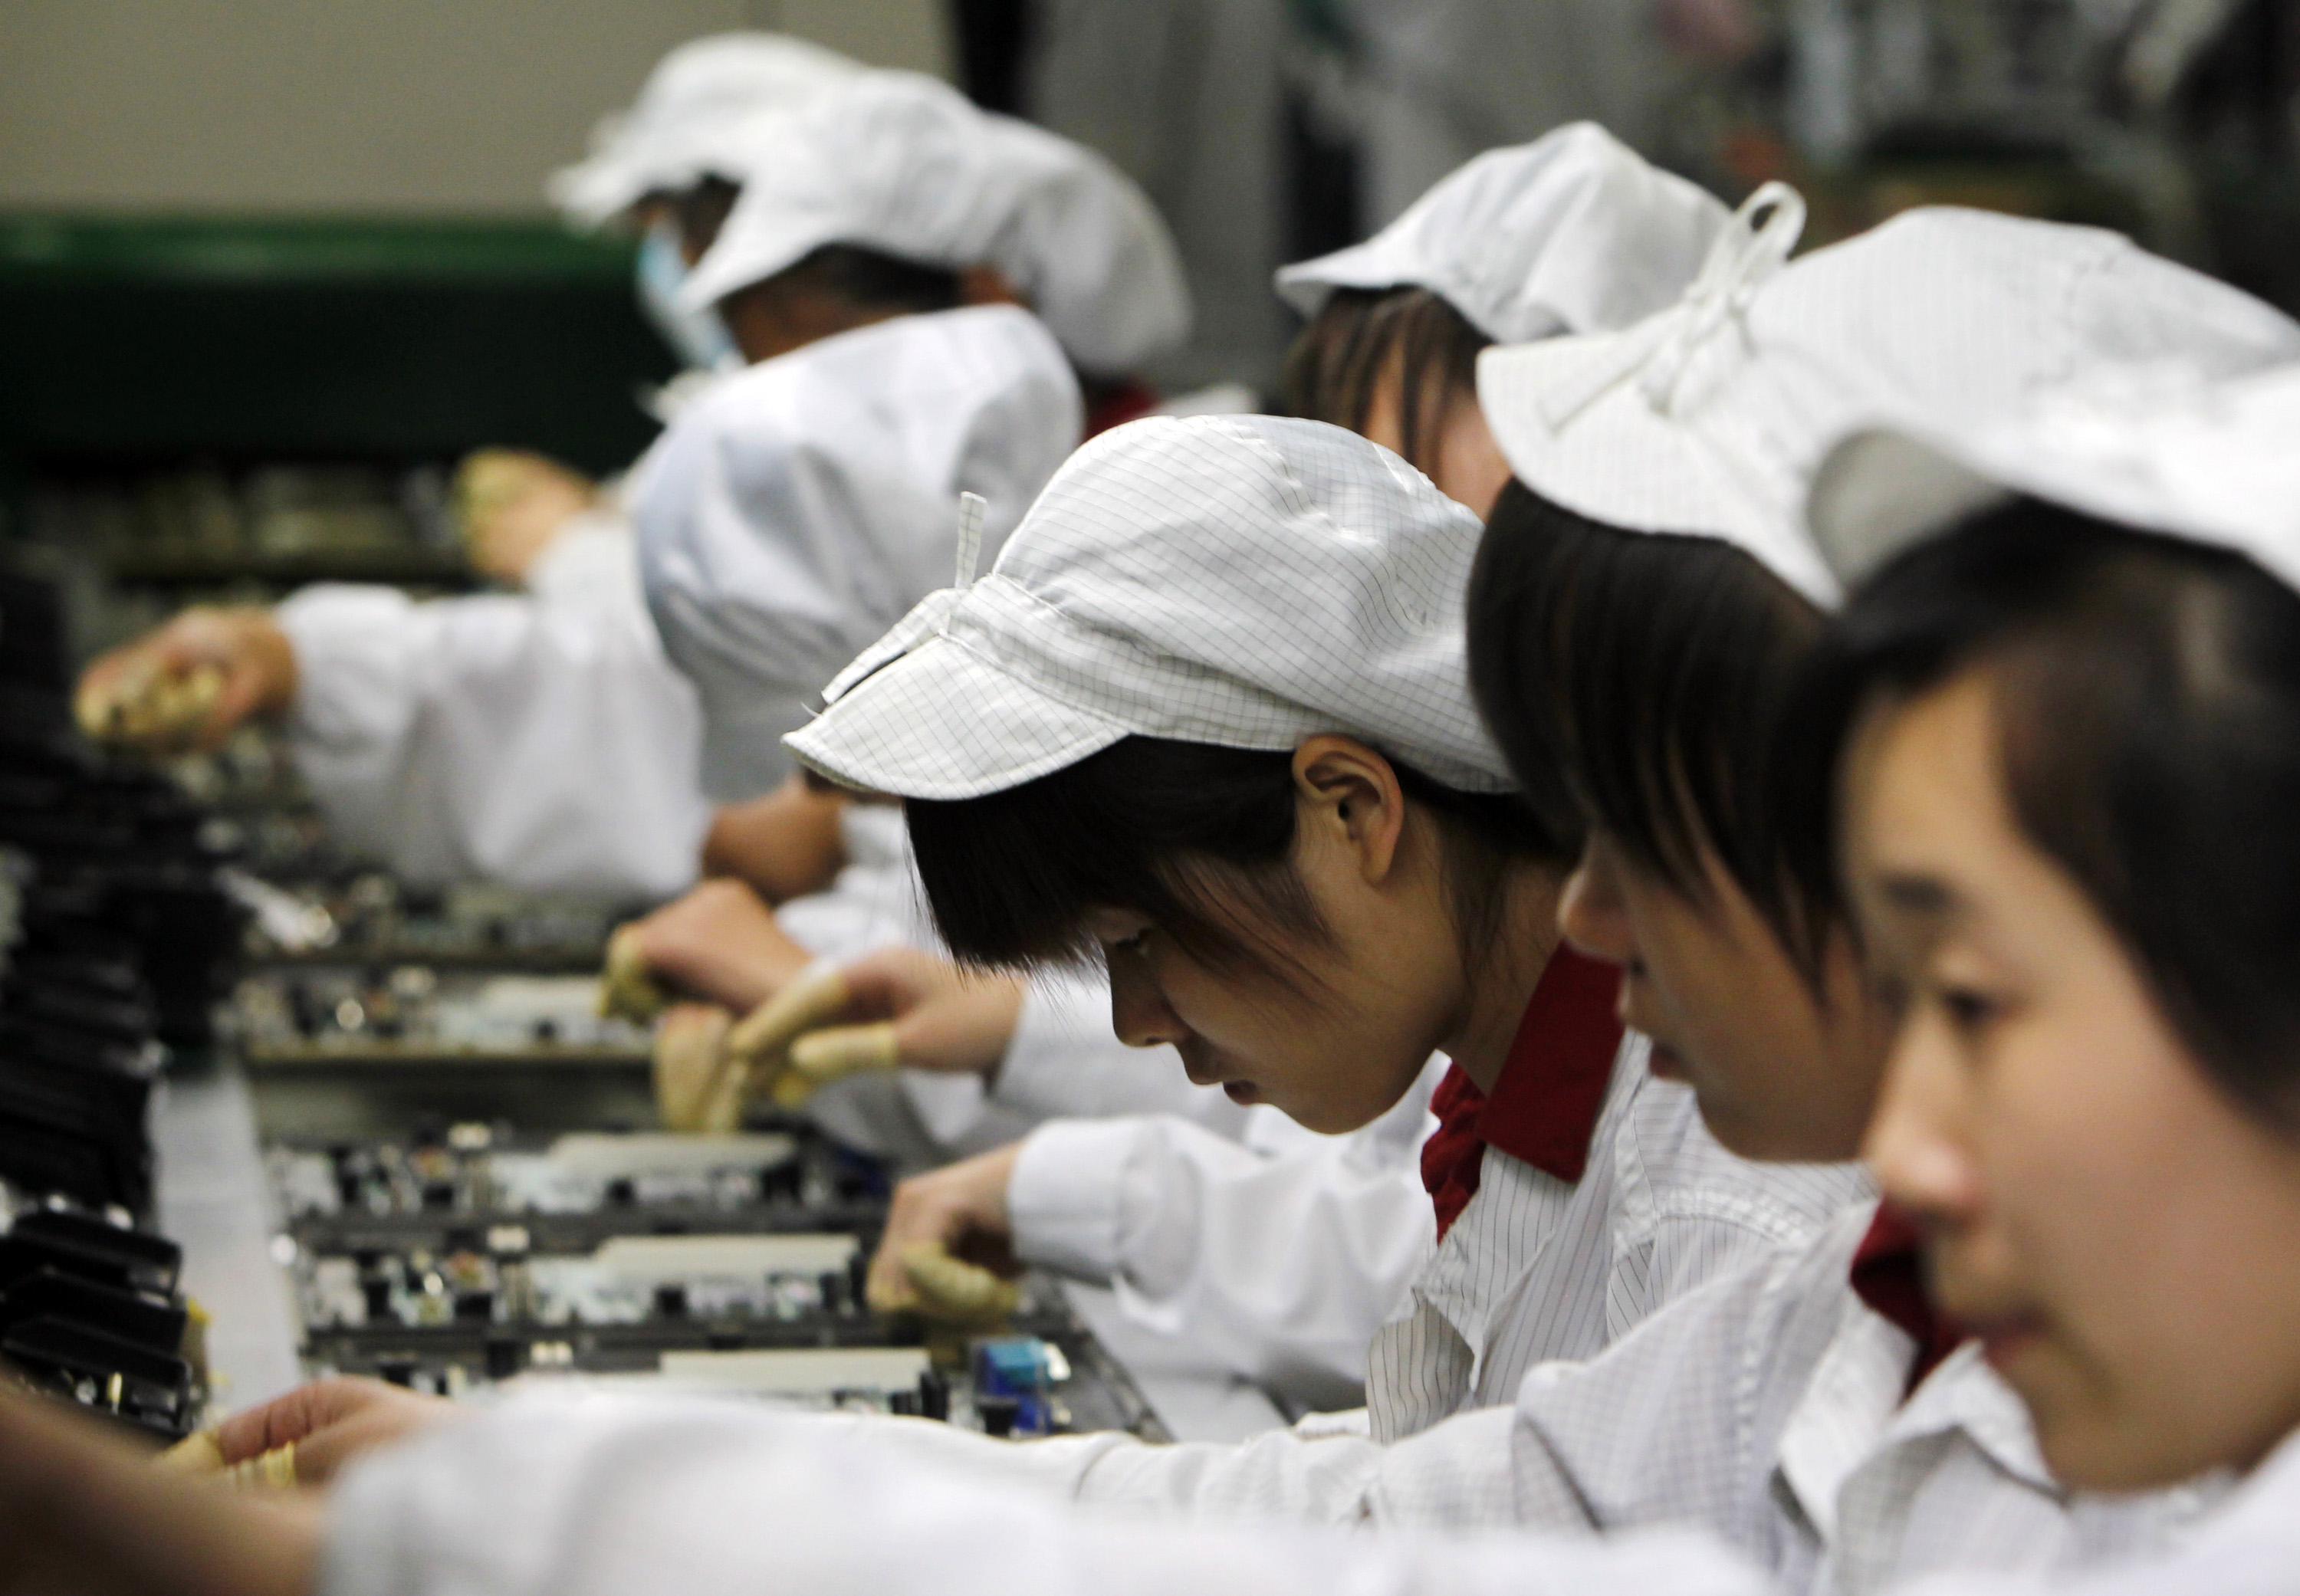 – Vi har nolltolerans vad det gäller barnarbete, skriver Apple.